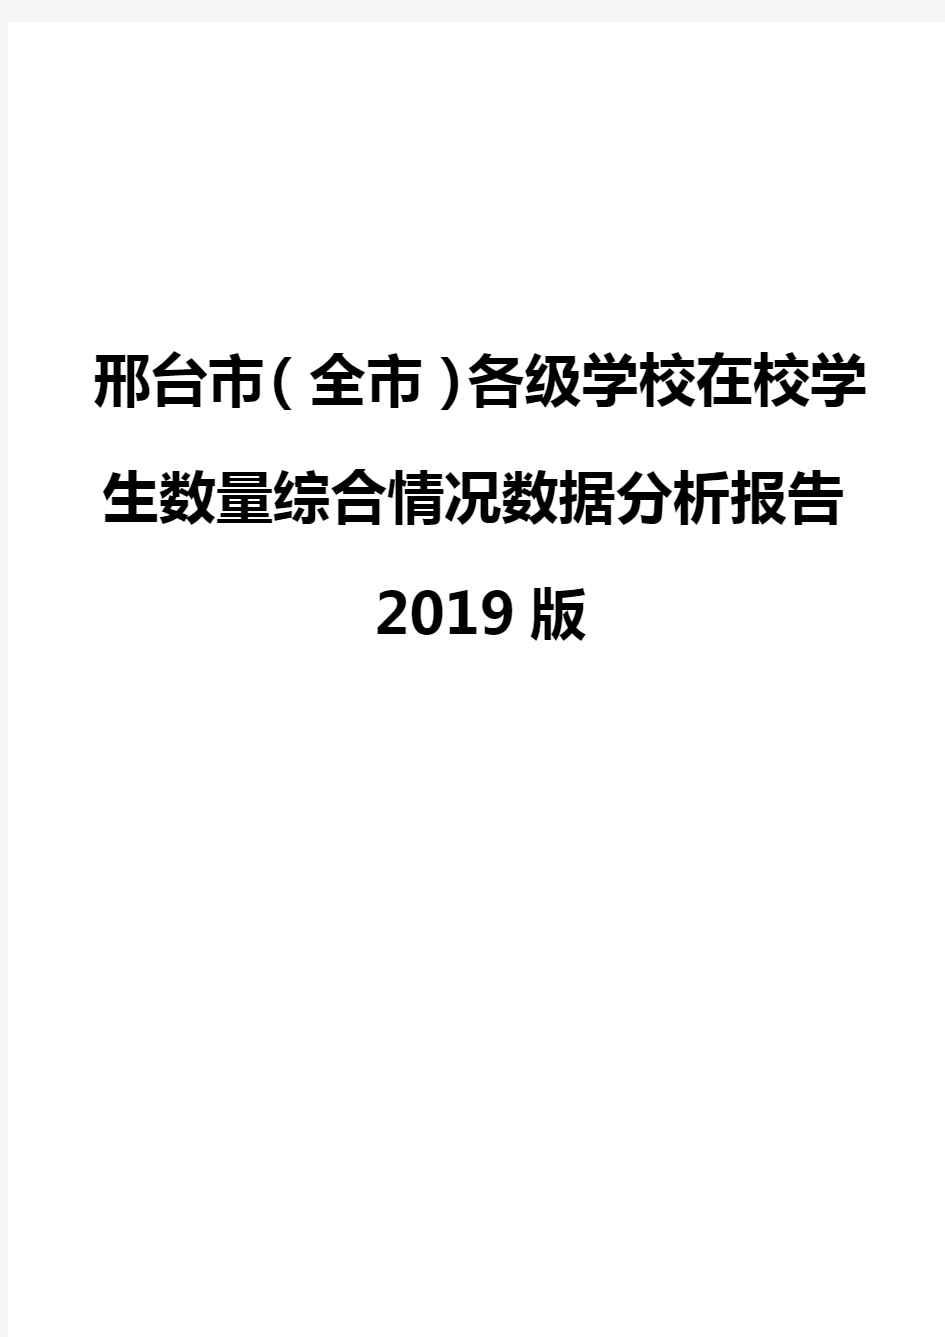 邢台市(全市)各级学校在校学生数量综合情况数据分析报告2019版